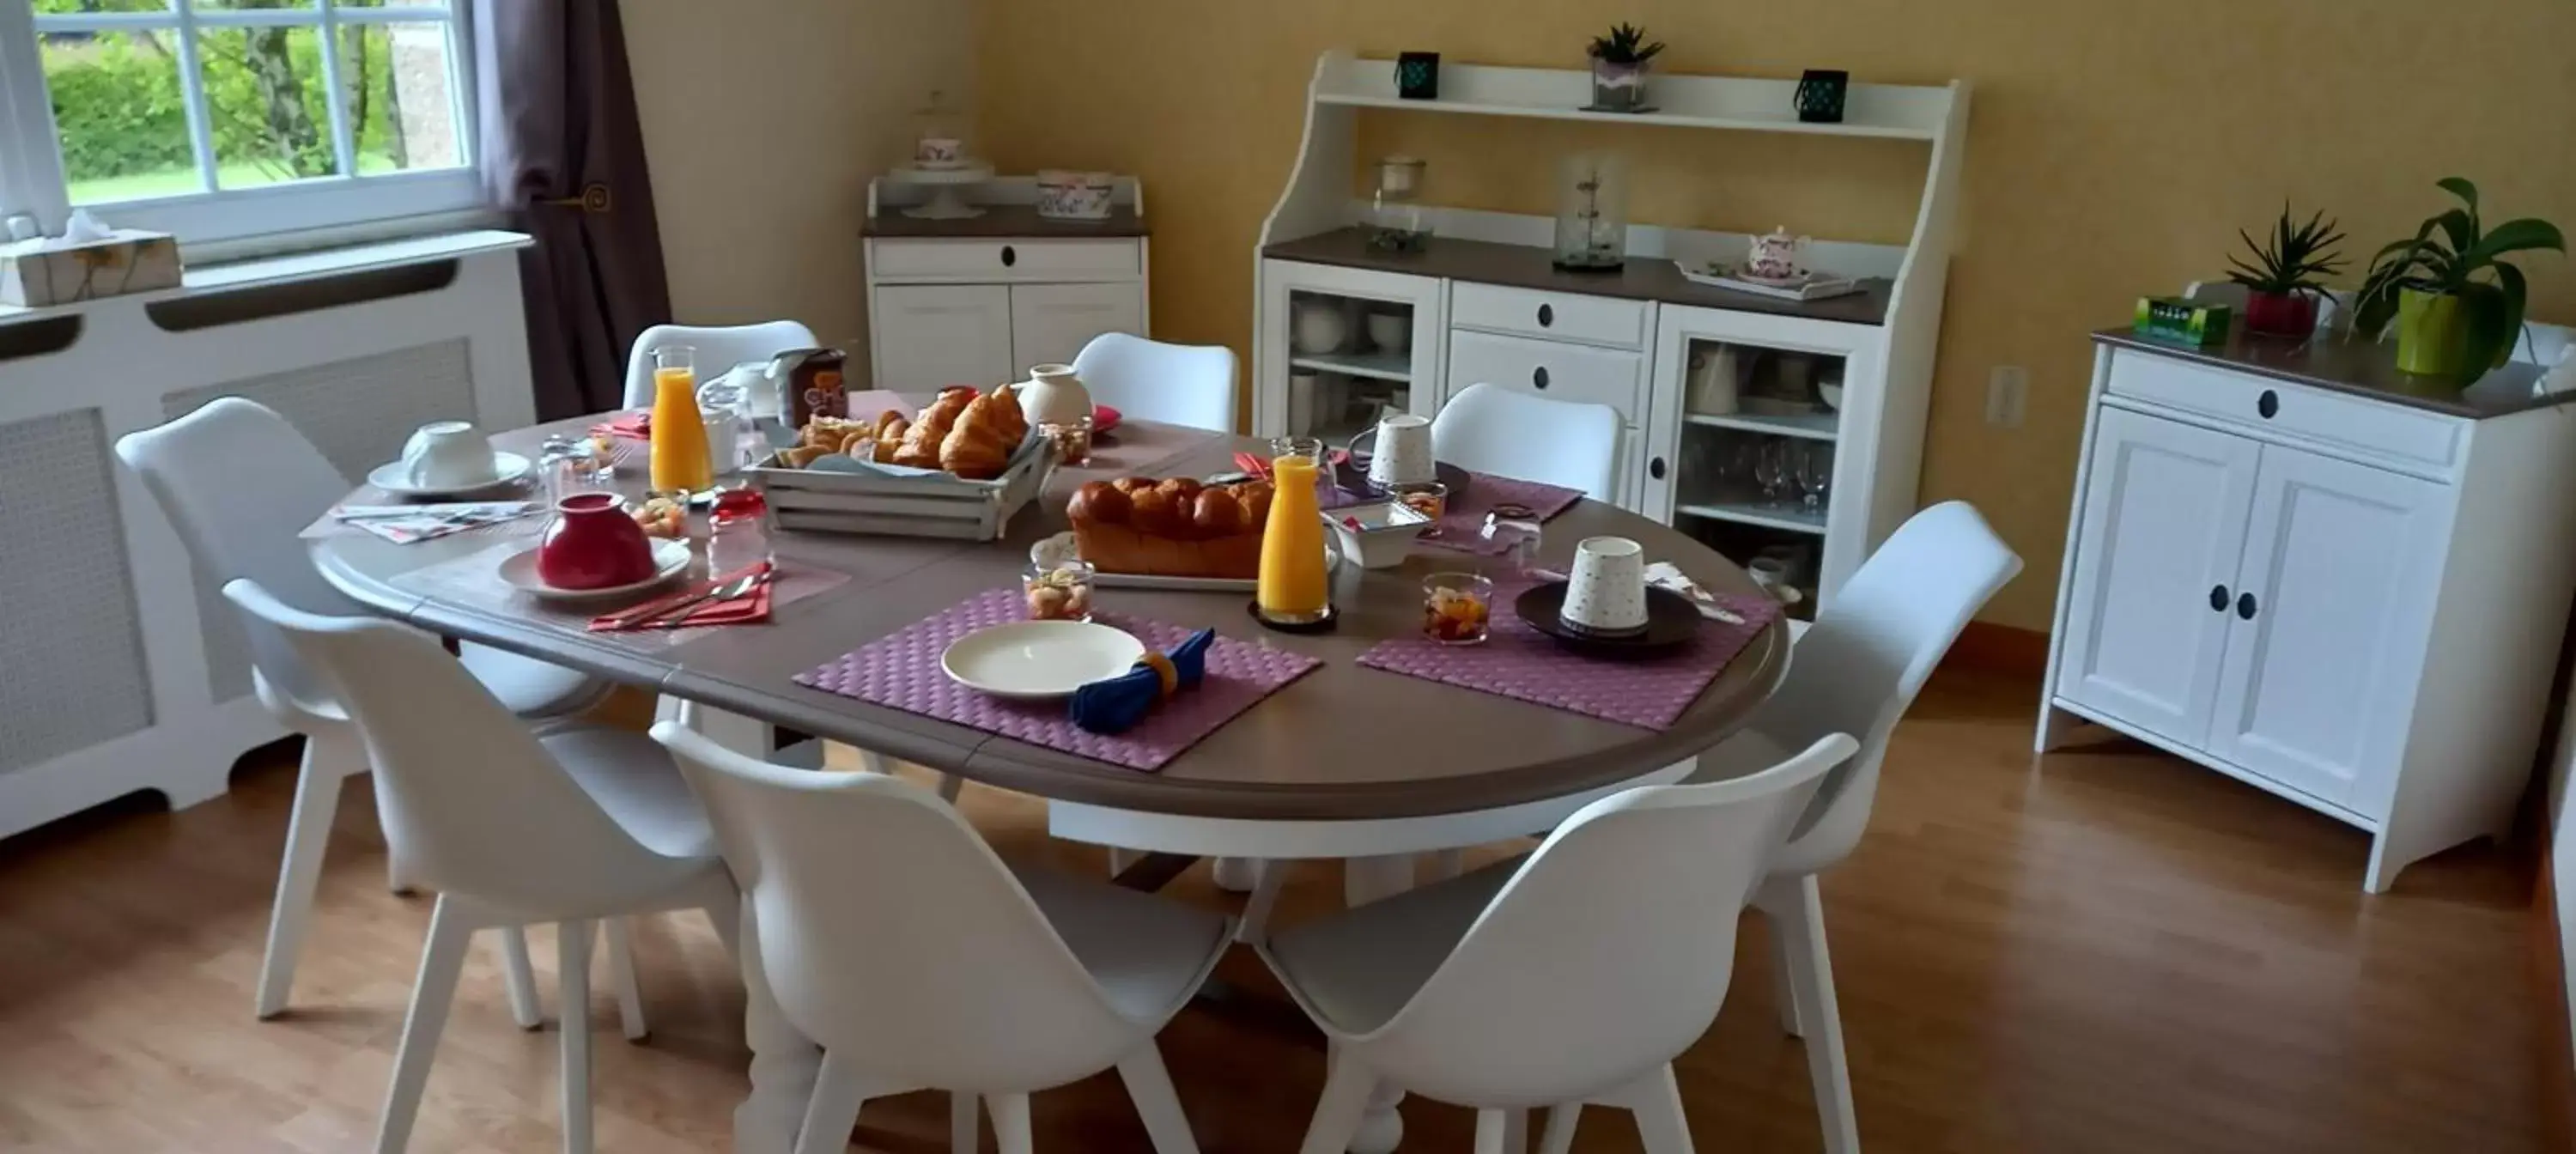 Breakfast, Dining Area in Ker Paula